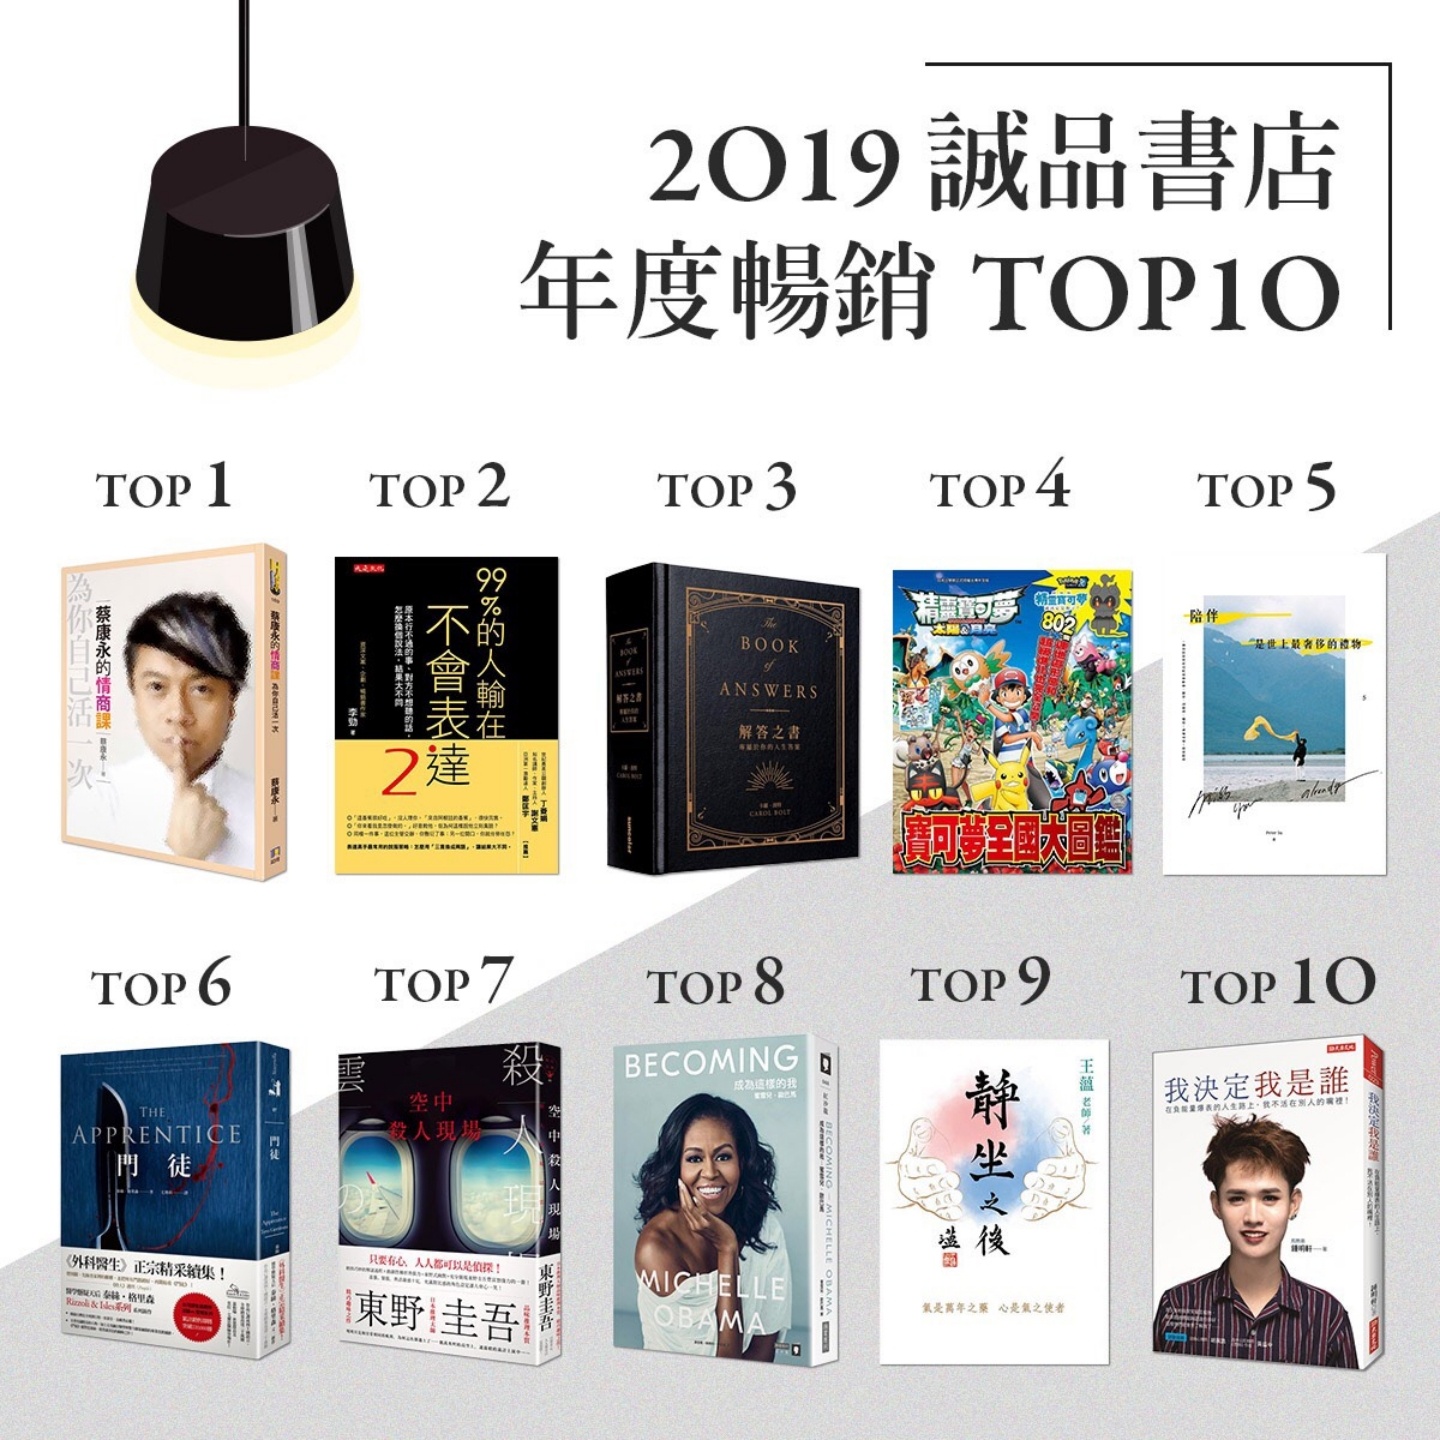 誠品 2019 前 10 大暢銷書排行榜出爐 蔡康永、鍾明軒告訴你如何『做自己』